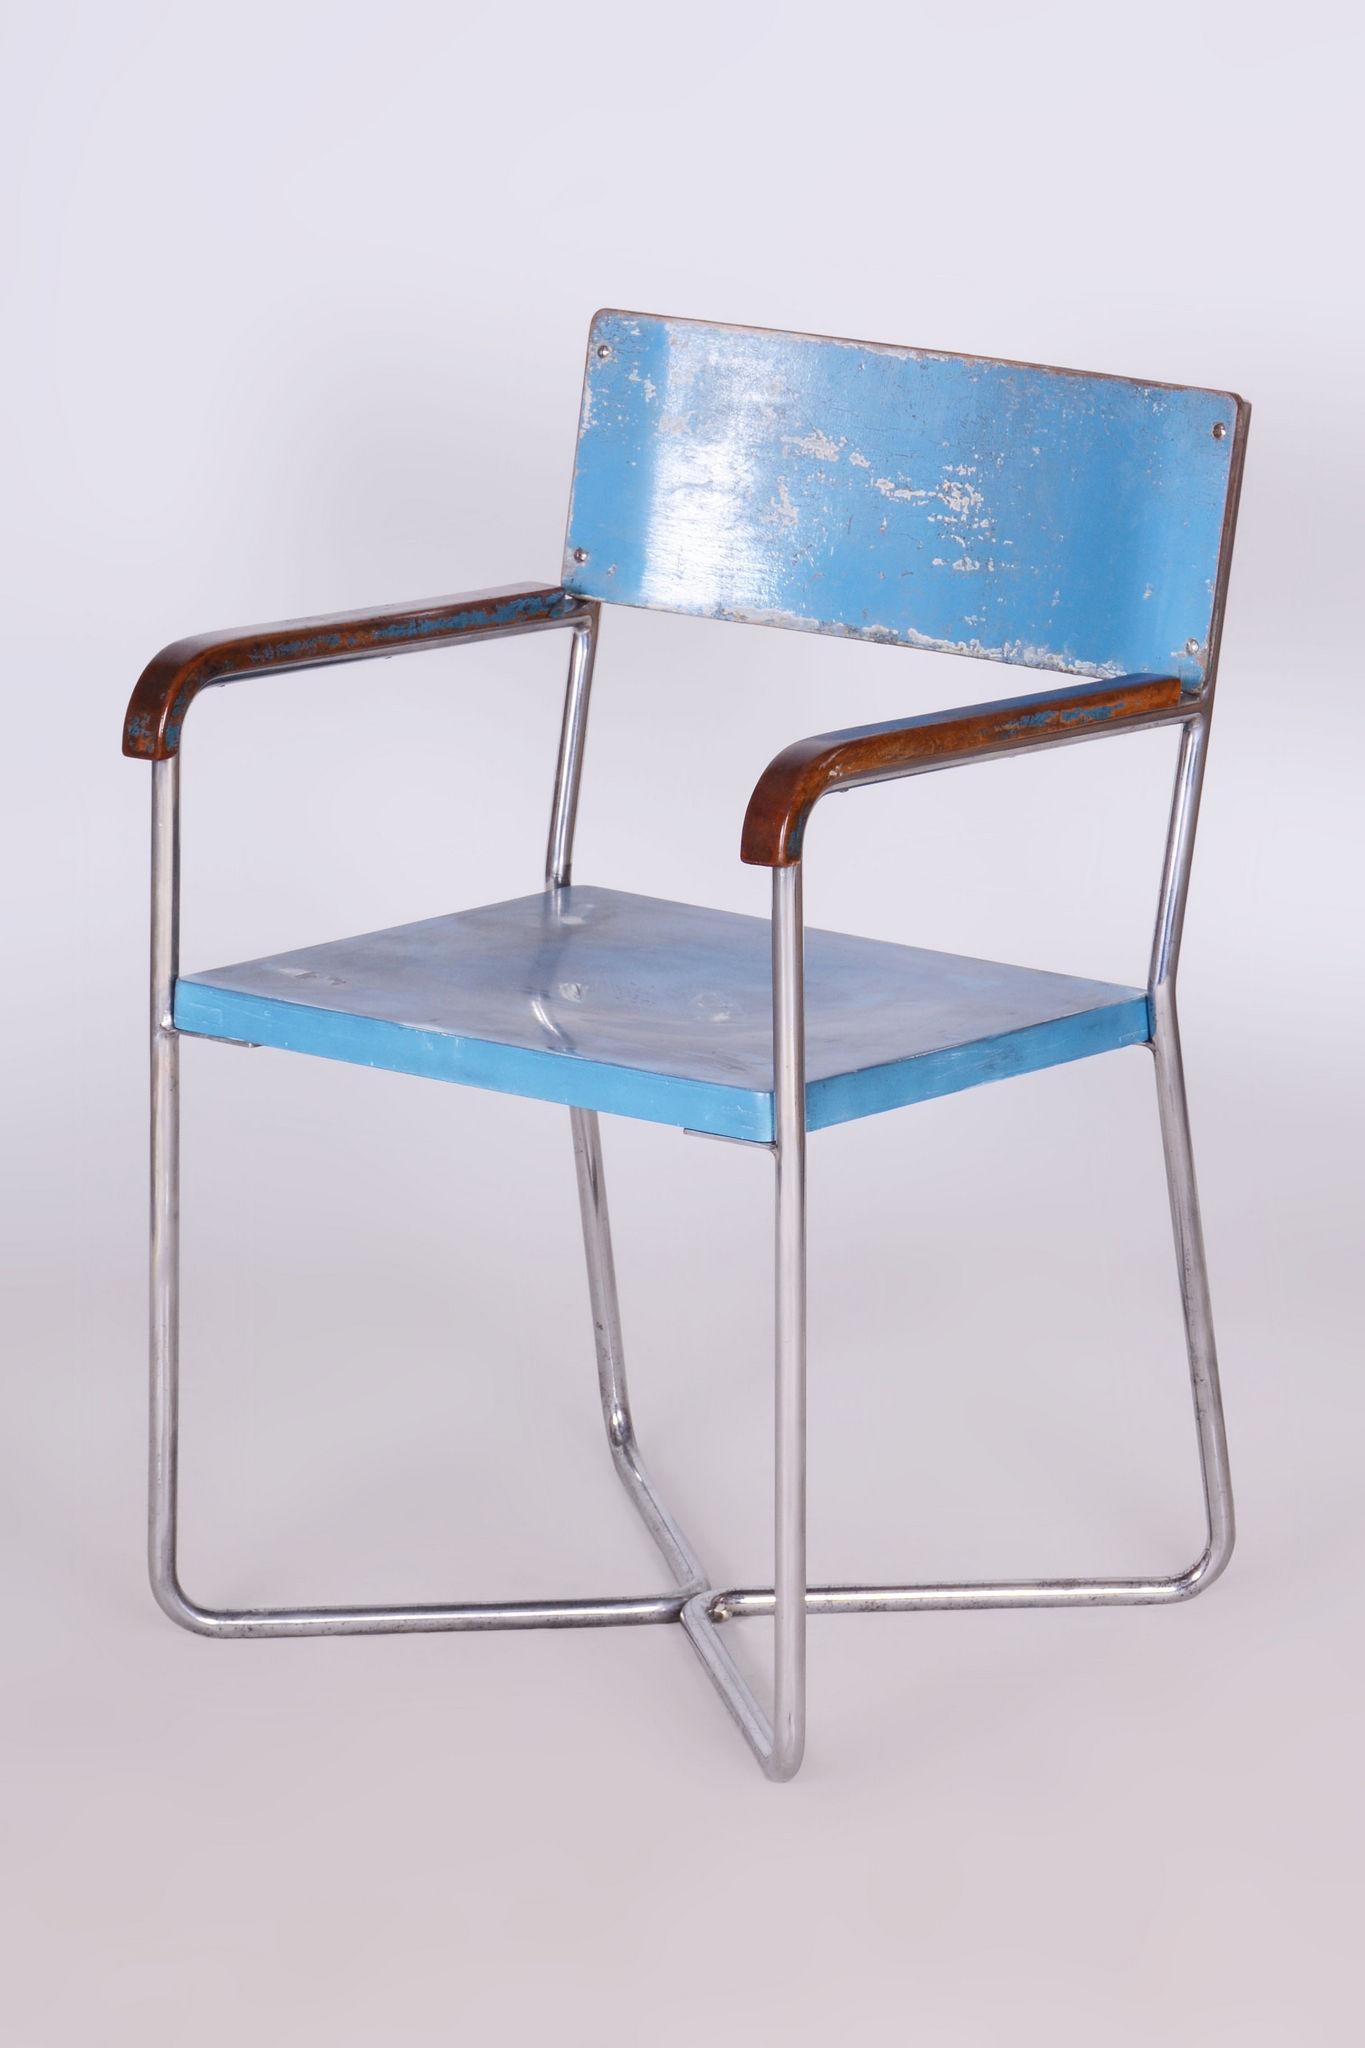 Hergestellt von Mücke Melder, einem einflussreichen modernistischen Möbelhersteller, der sich auf Stahlrohrdesigns spezialisiert hat. 

Der Artikel befindet sich in einem tadellosen Originalzustand, wurde professionell gereinigt und von unserem